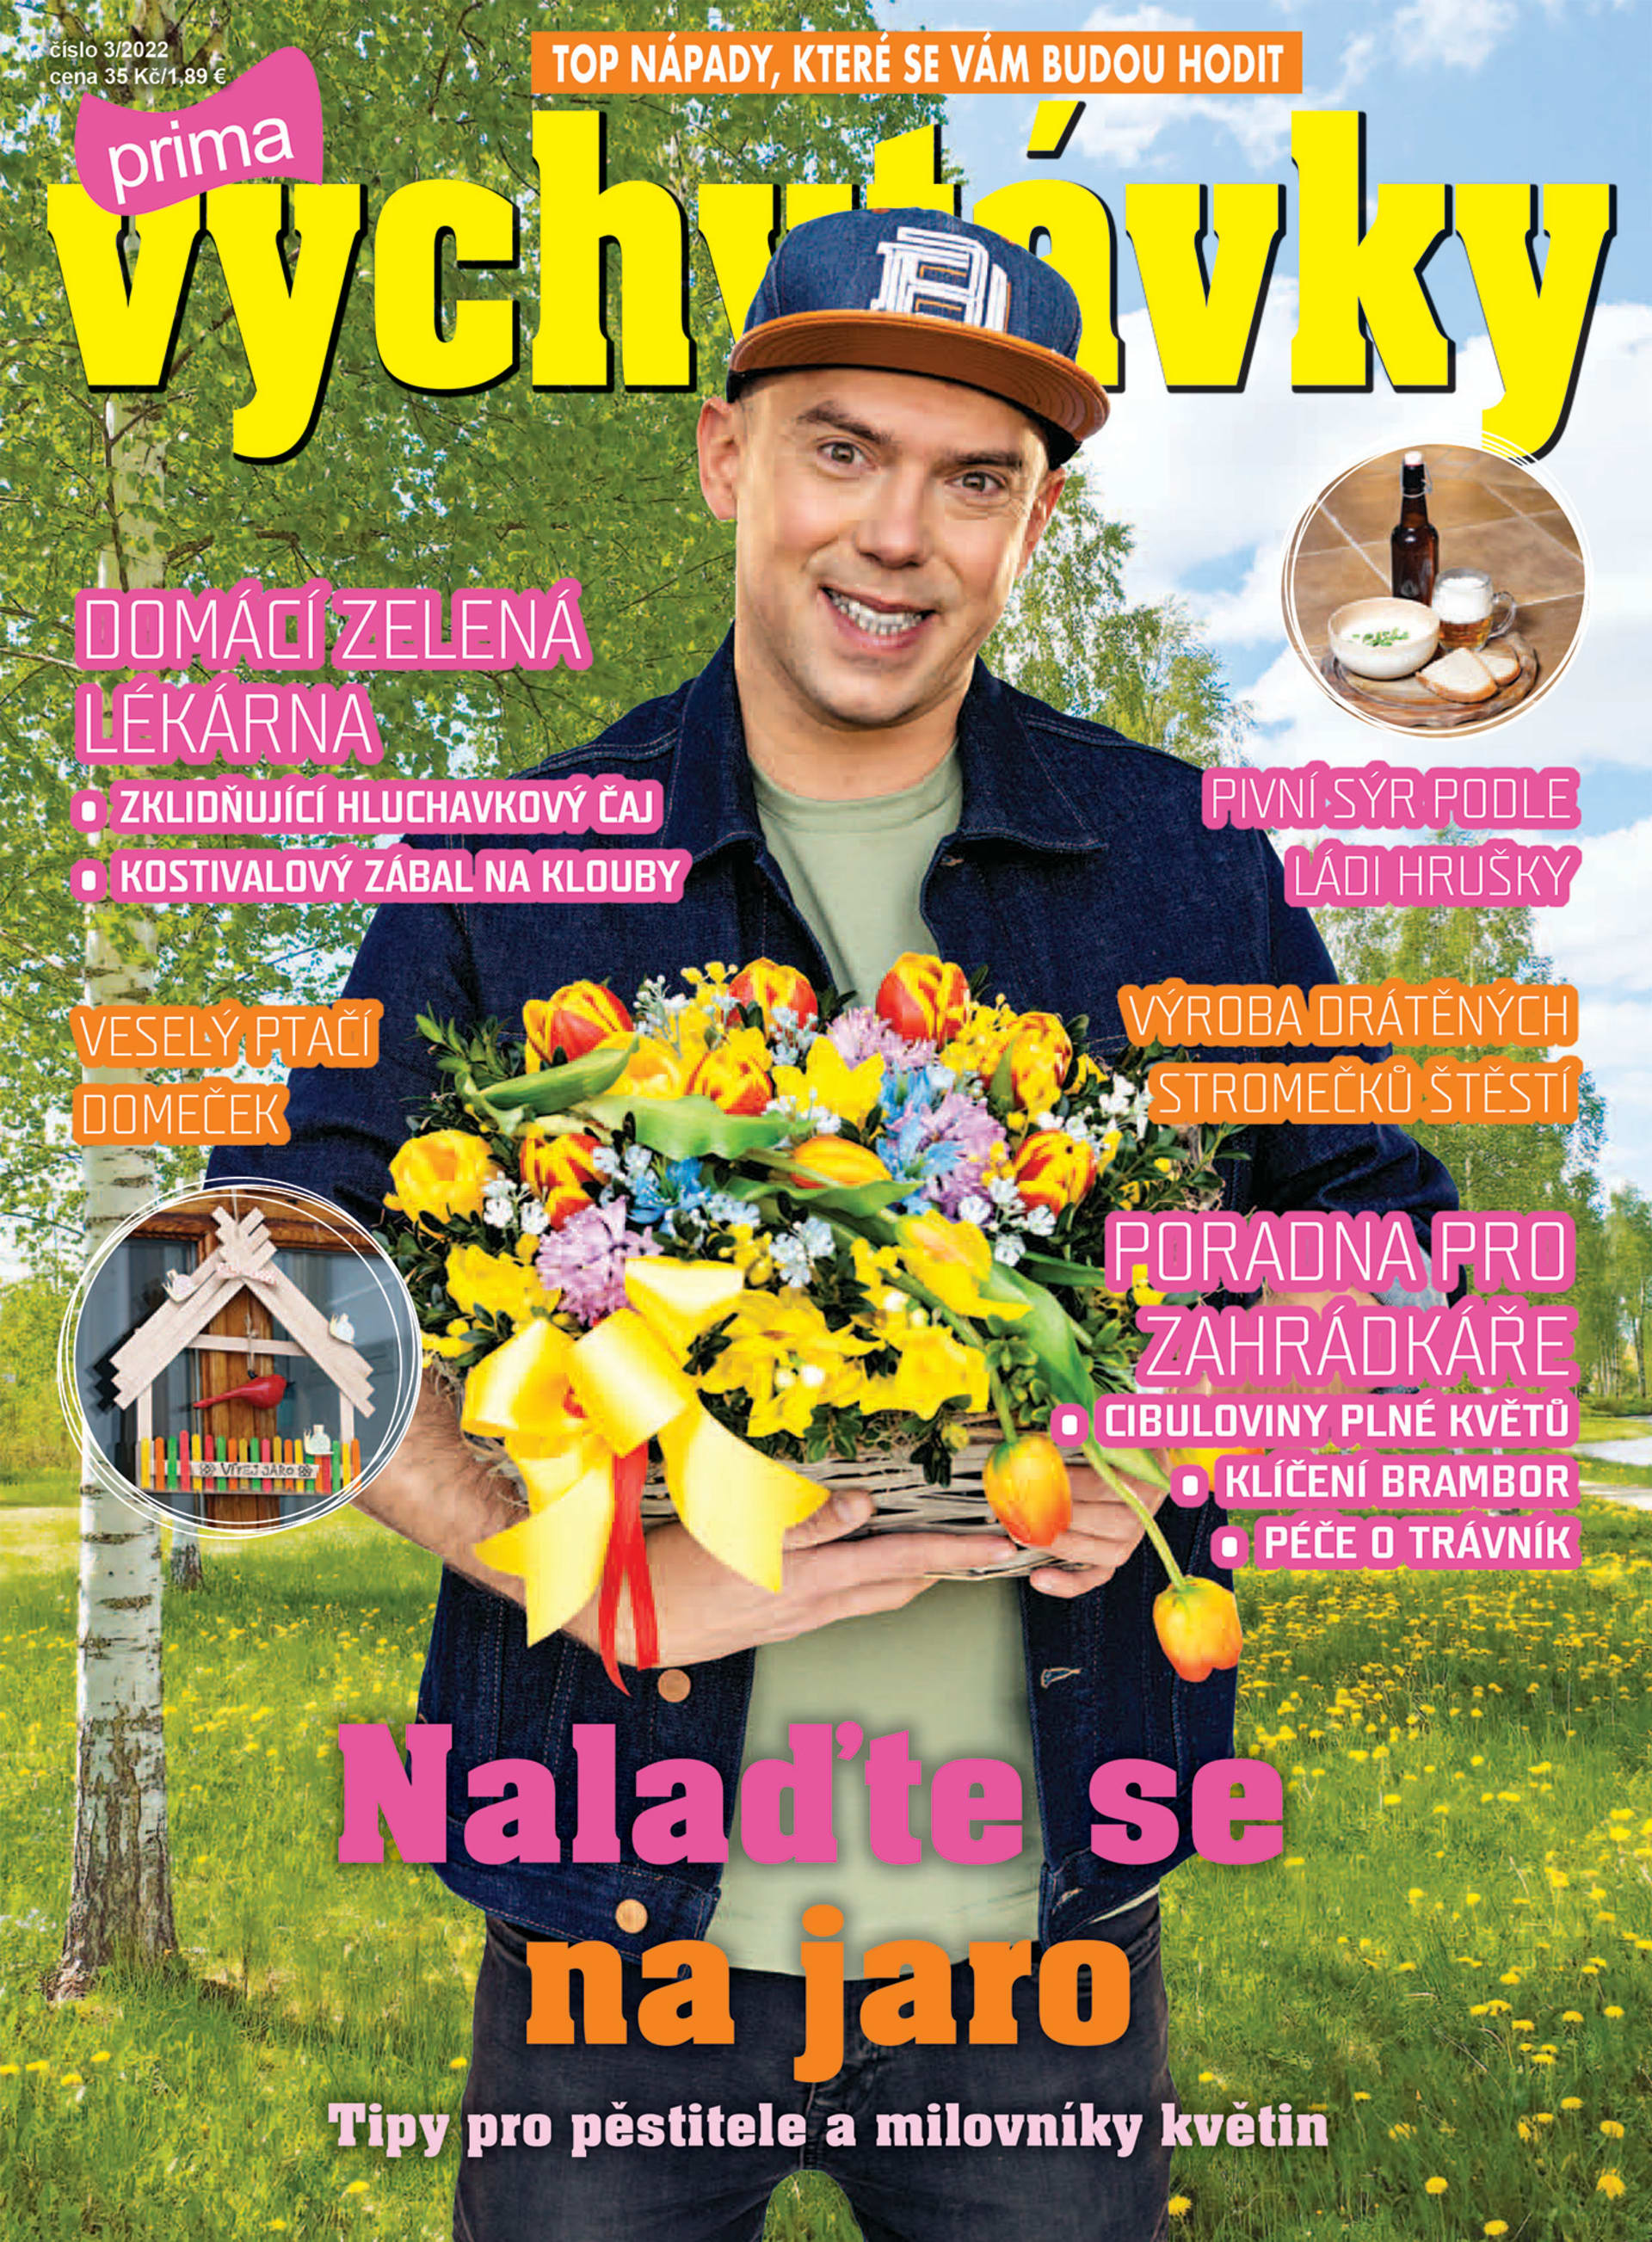 Titulní strana časopisu, který vychází 23. února